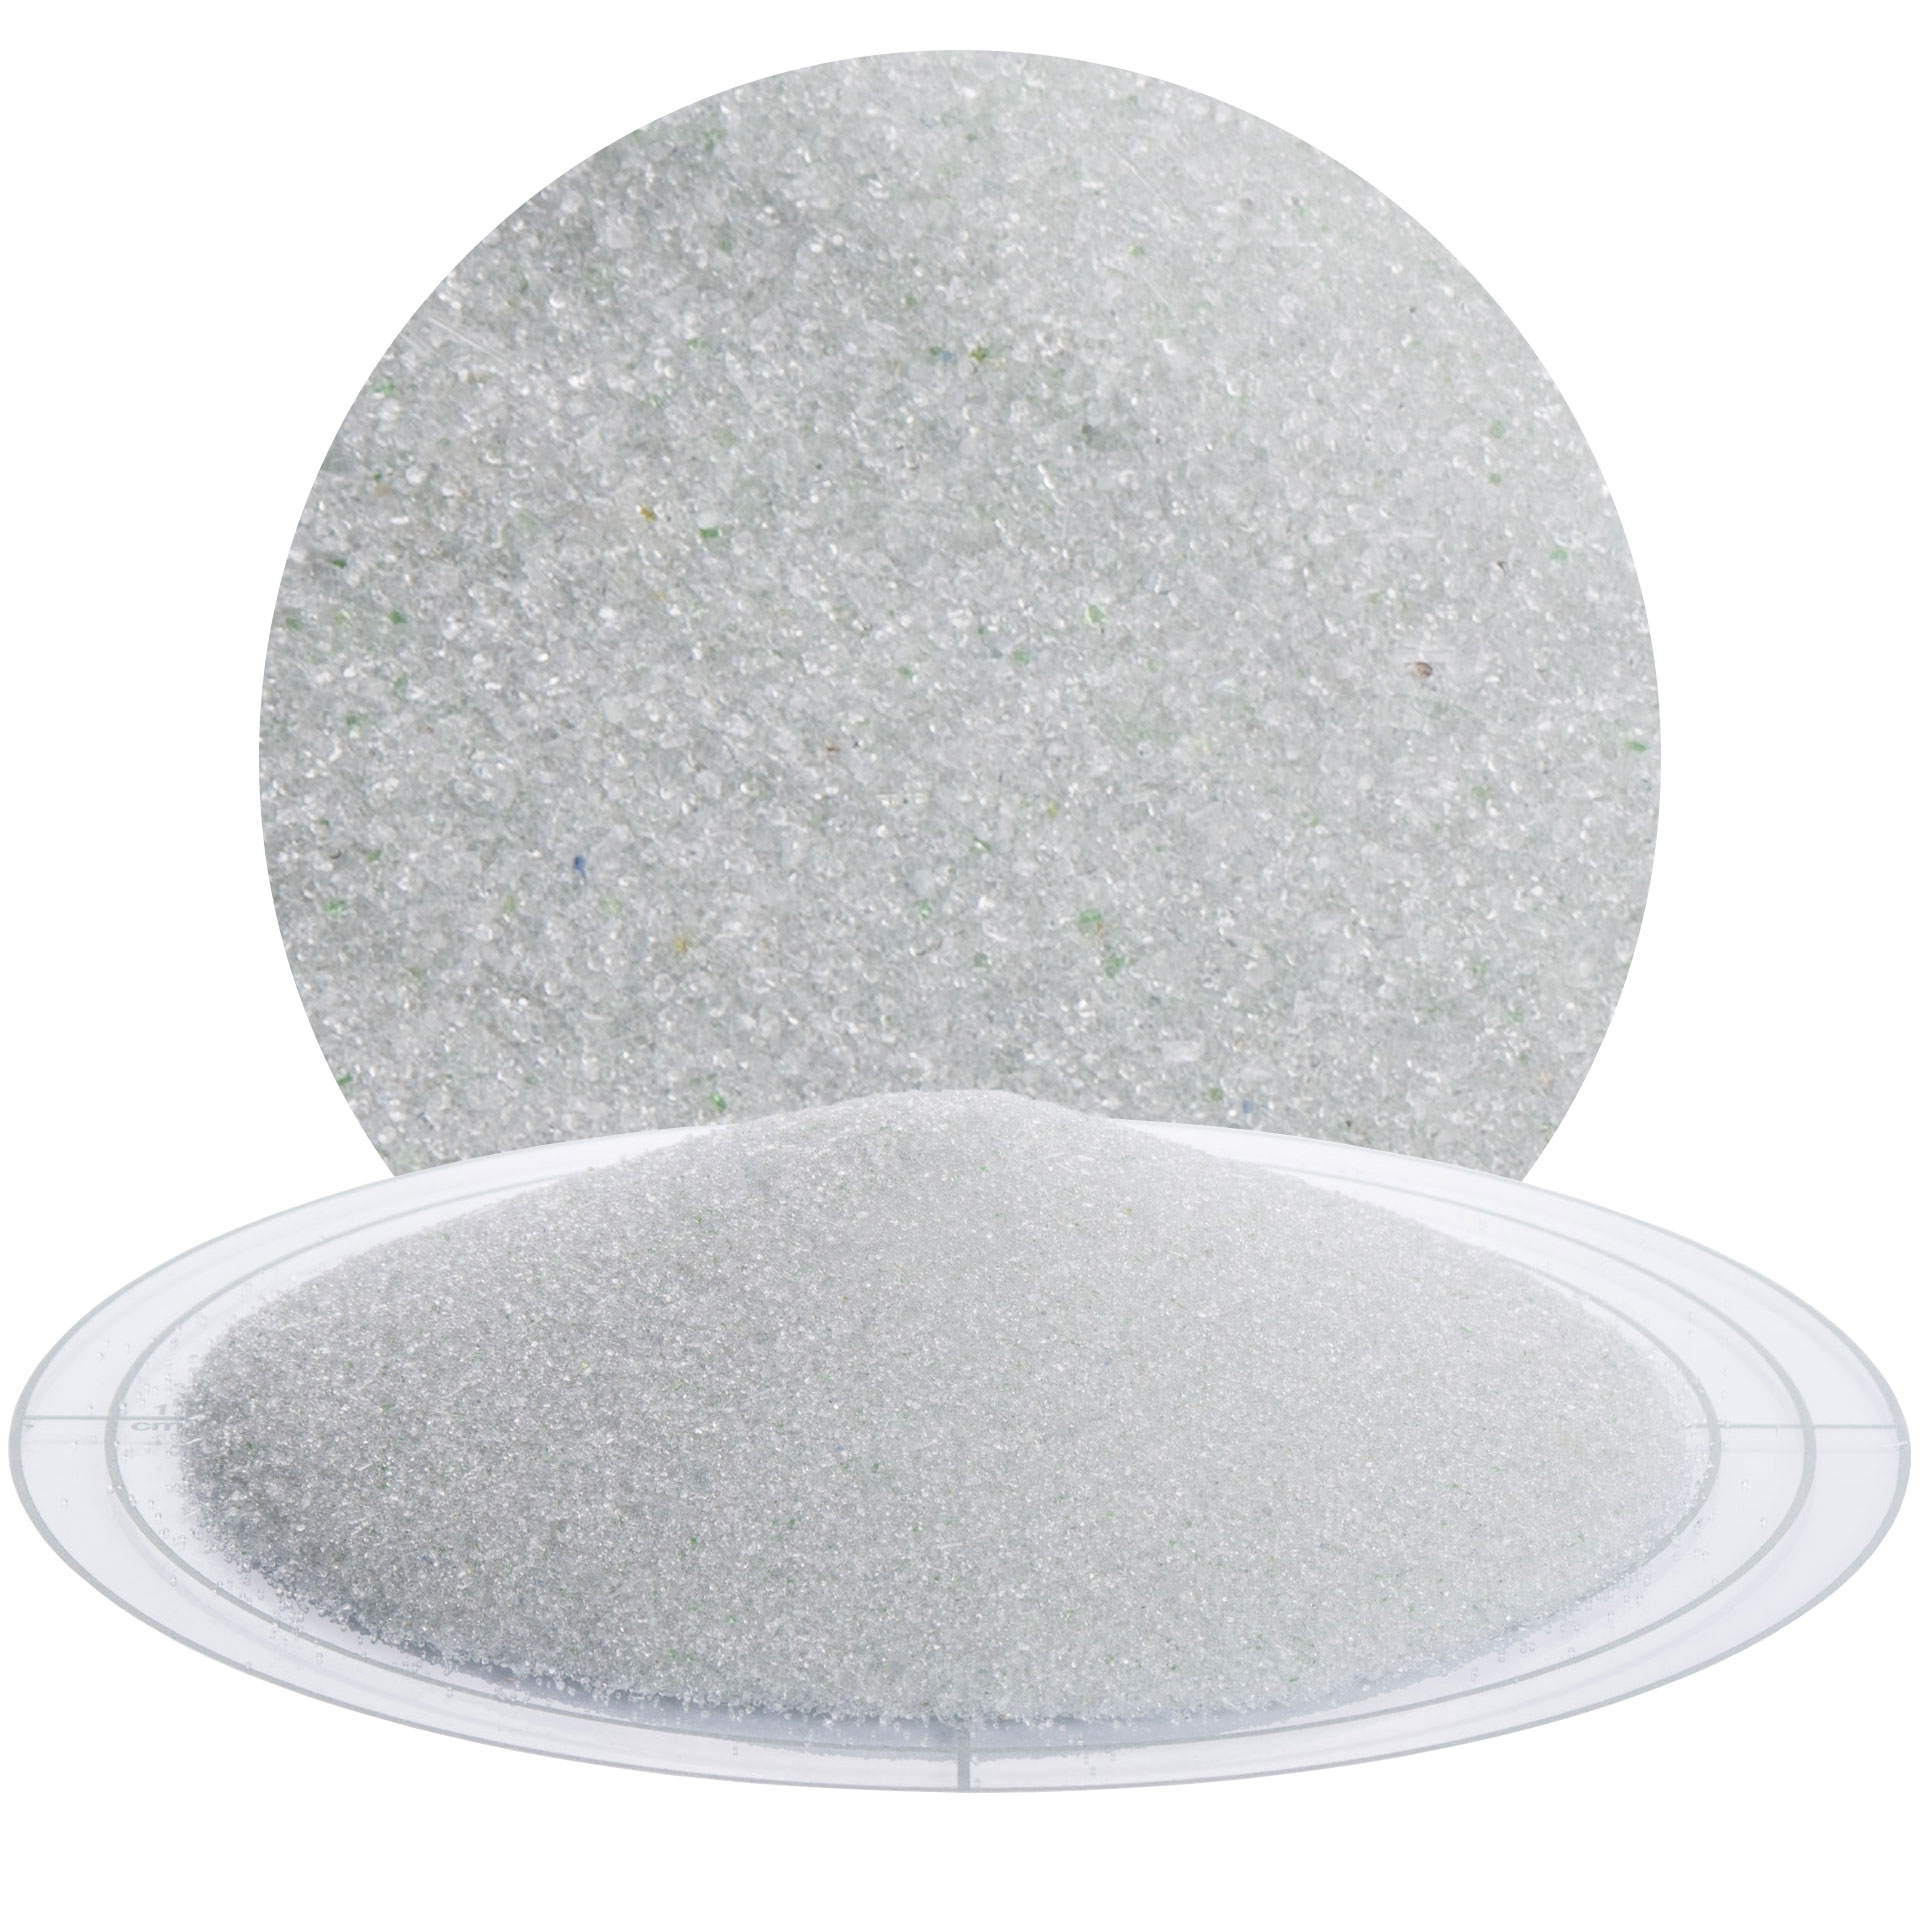 25 kg Strahlmittel Glasperlen 400-800µ zum Strahlen seidenmatter Oberflächen 